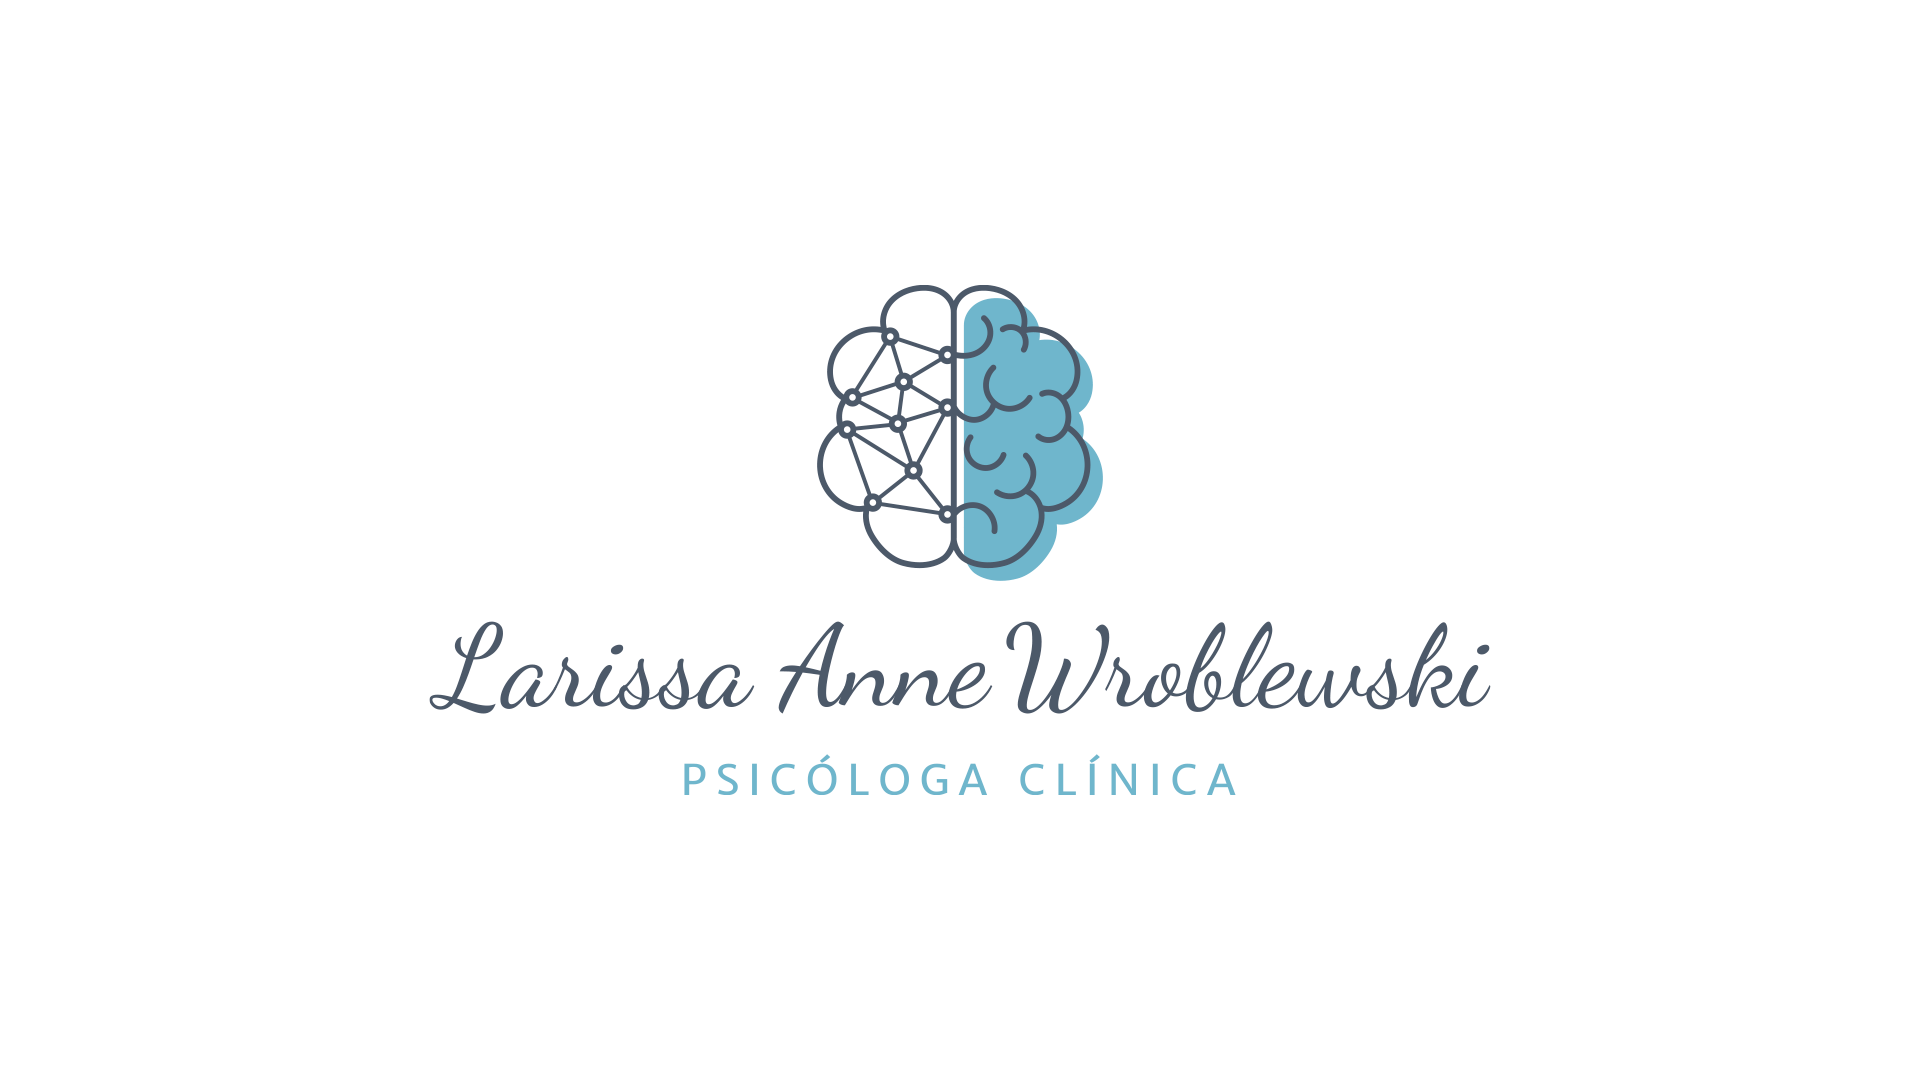 Criação da marca para a psicóloga clínica Larissa Anne Wroblewski, por Cristiano Valim